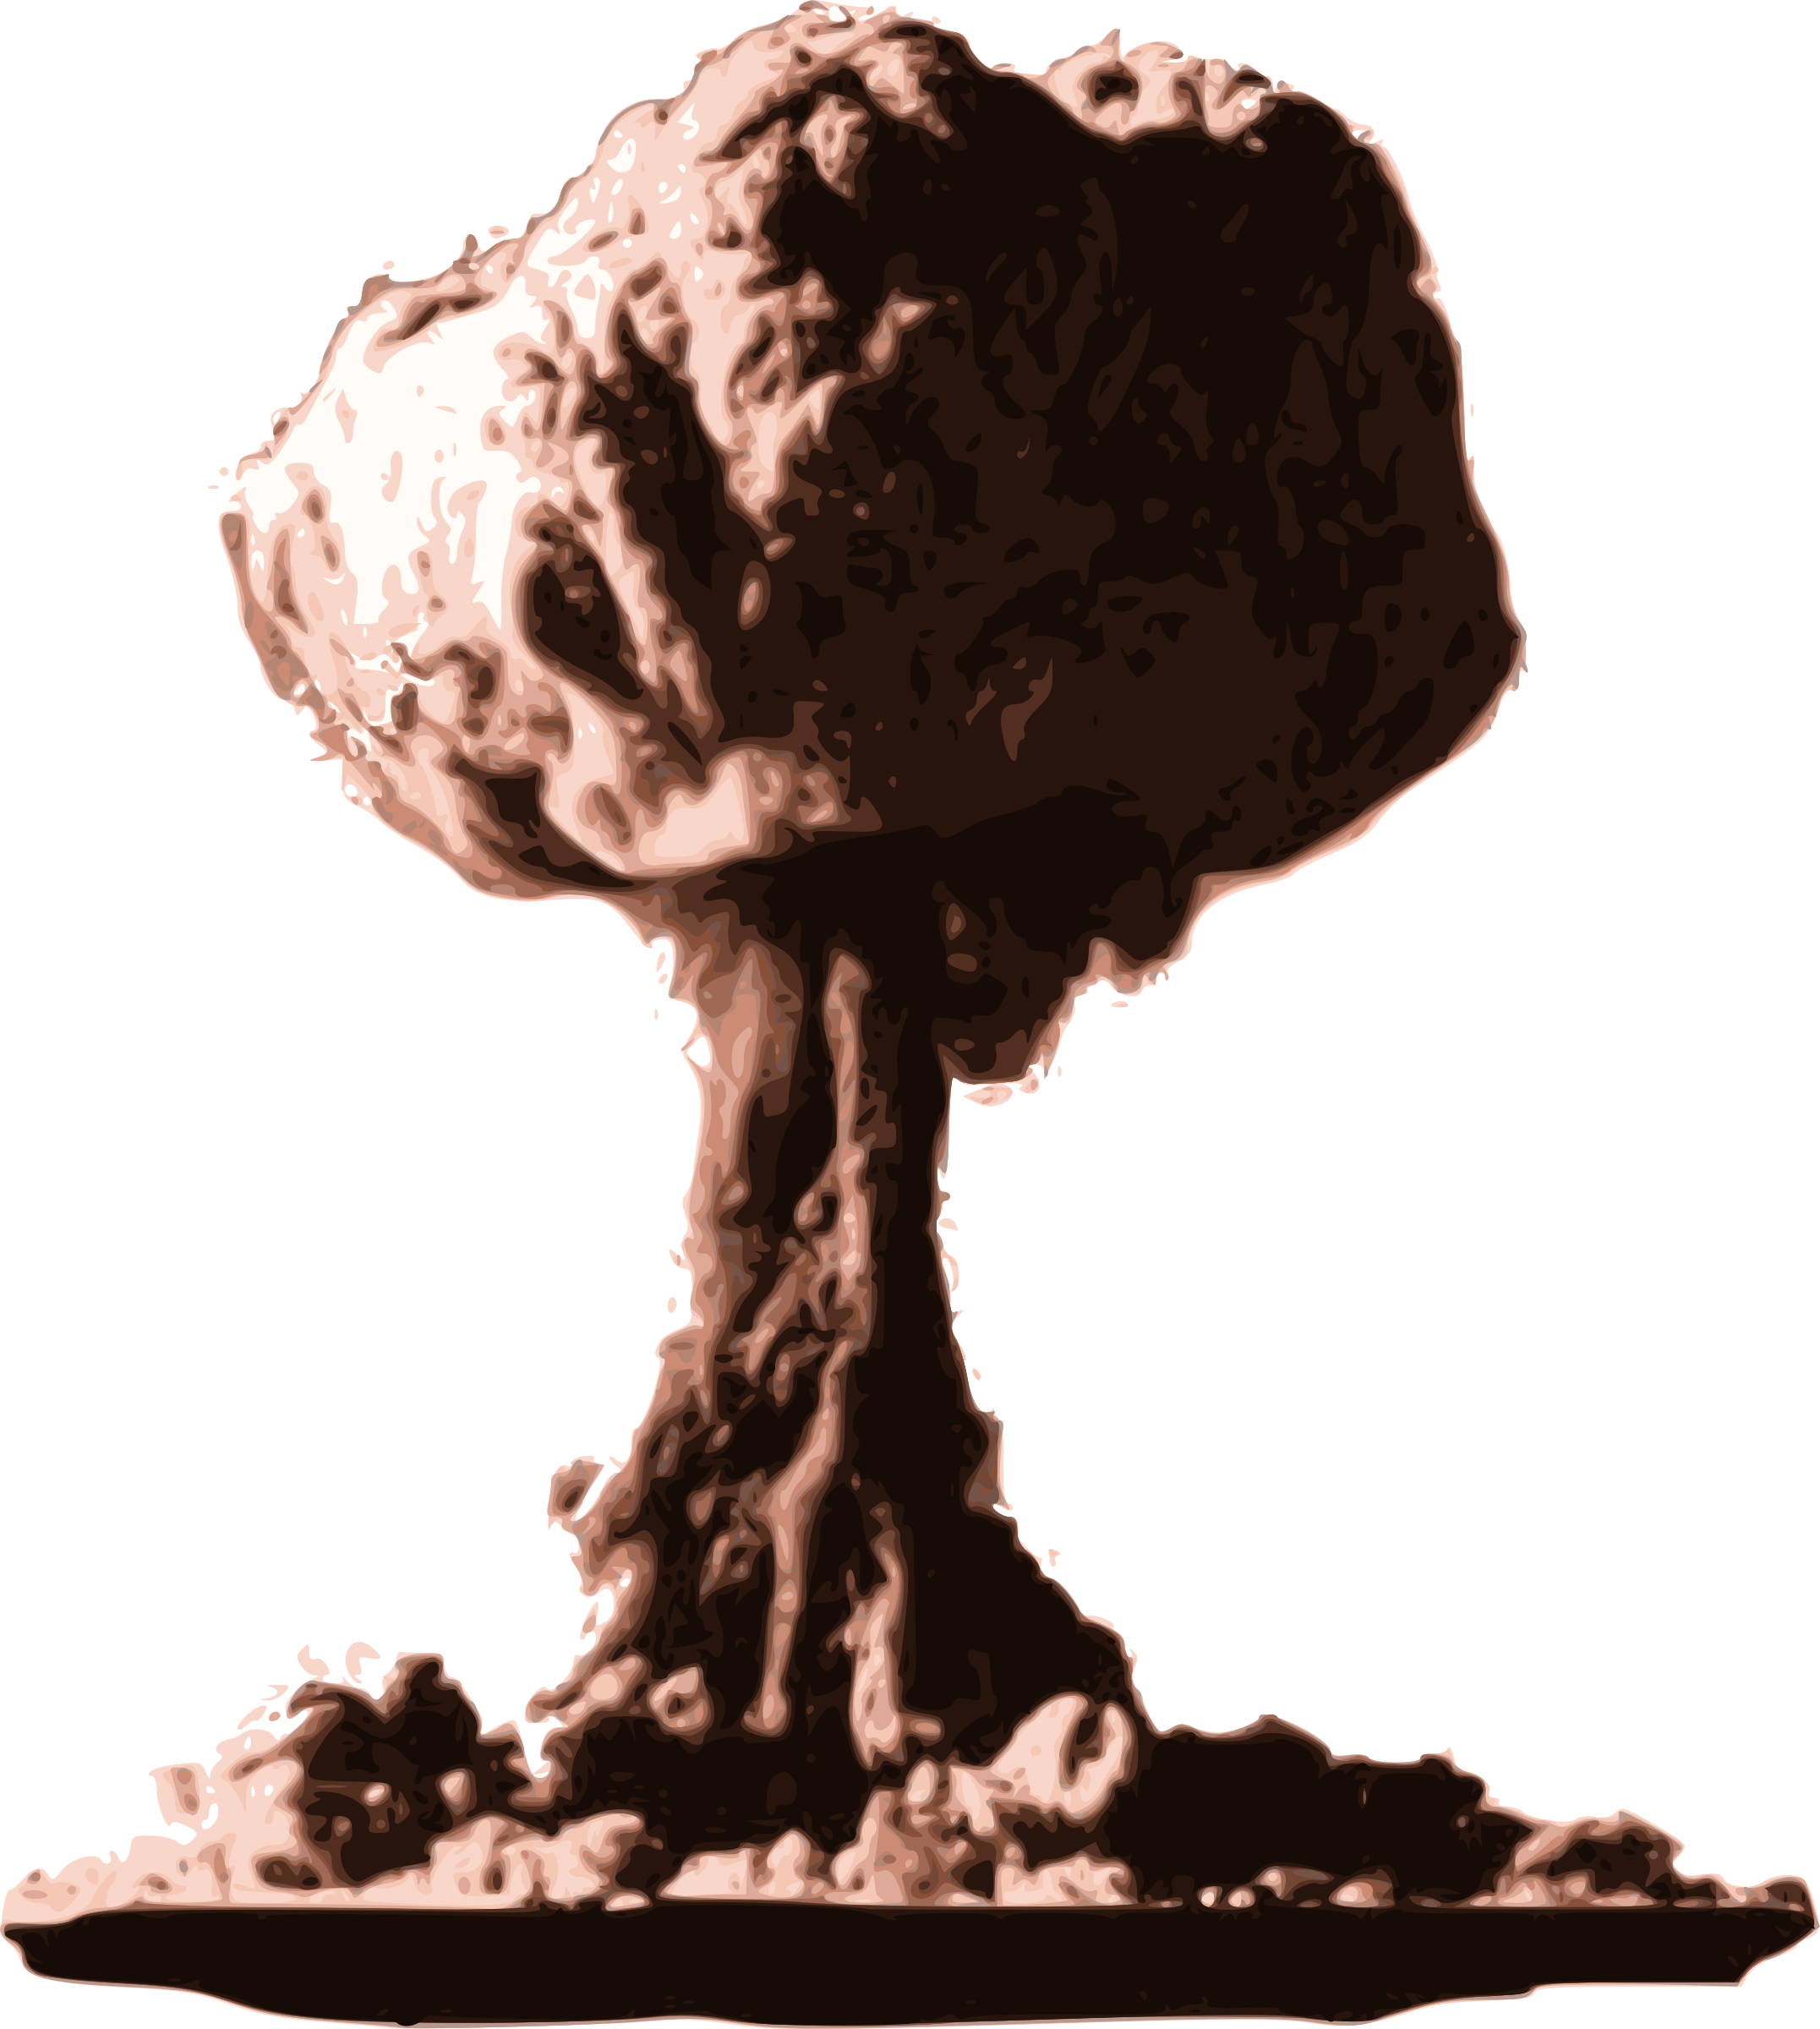 परमाणु विस्फोट मशरूम बादल